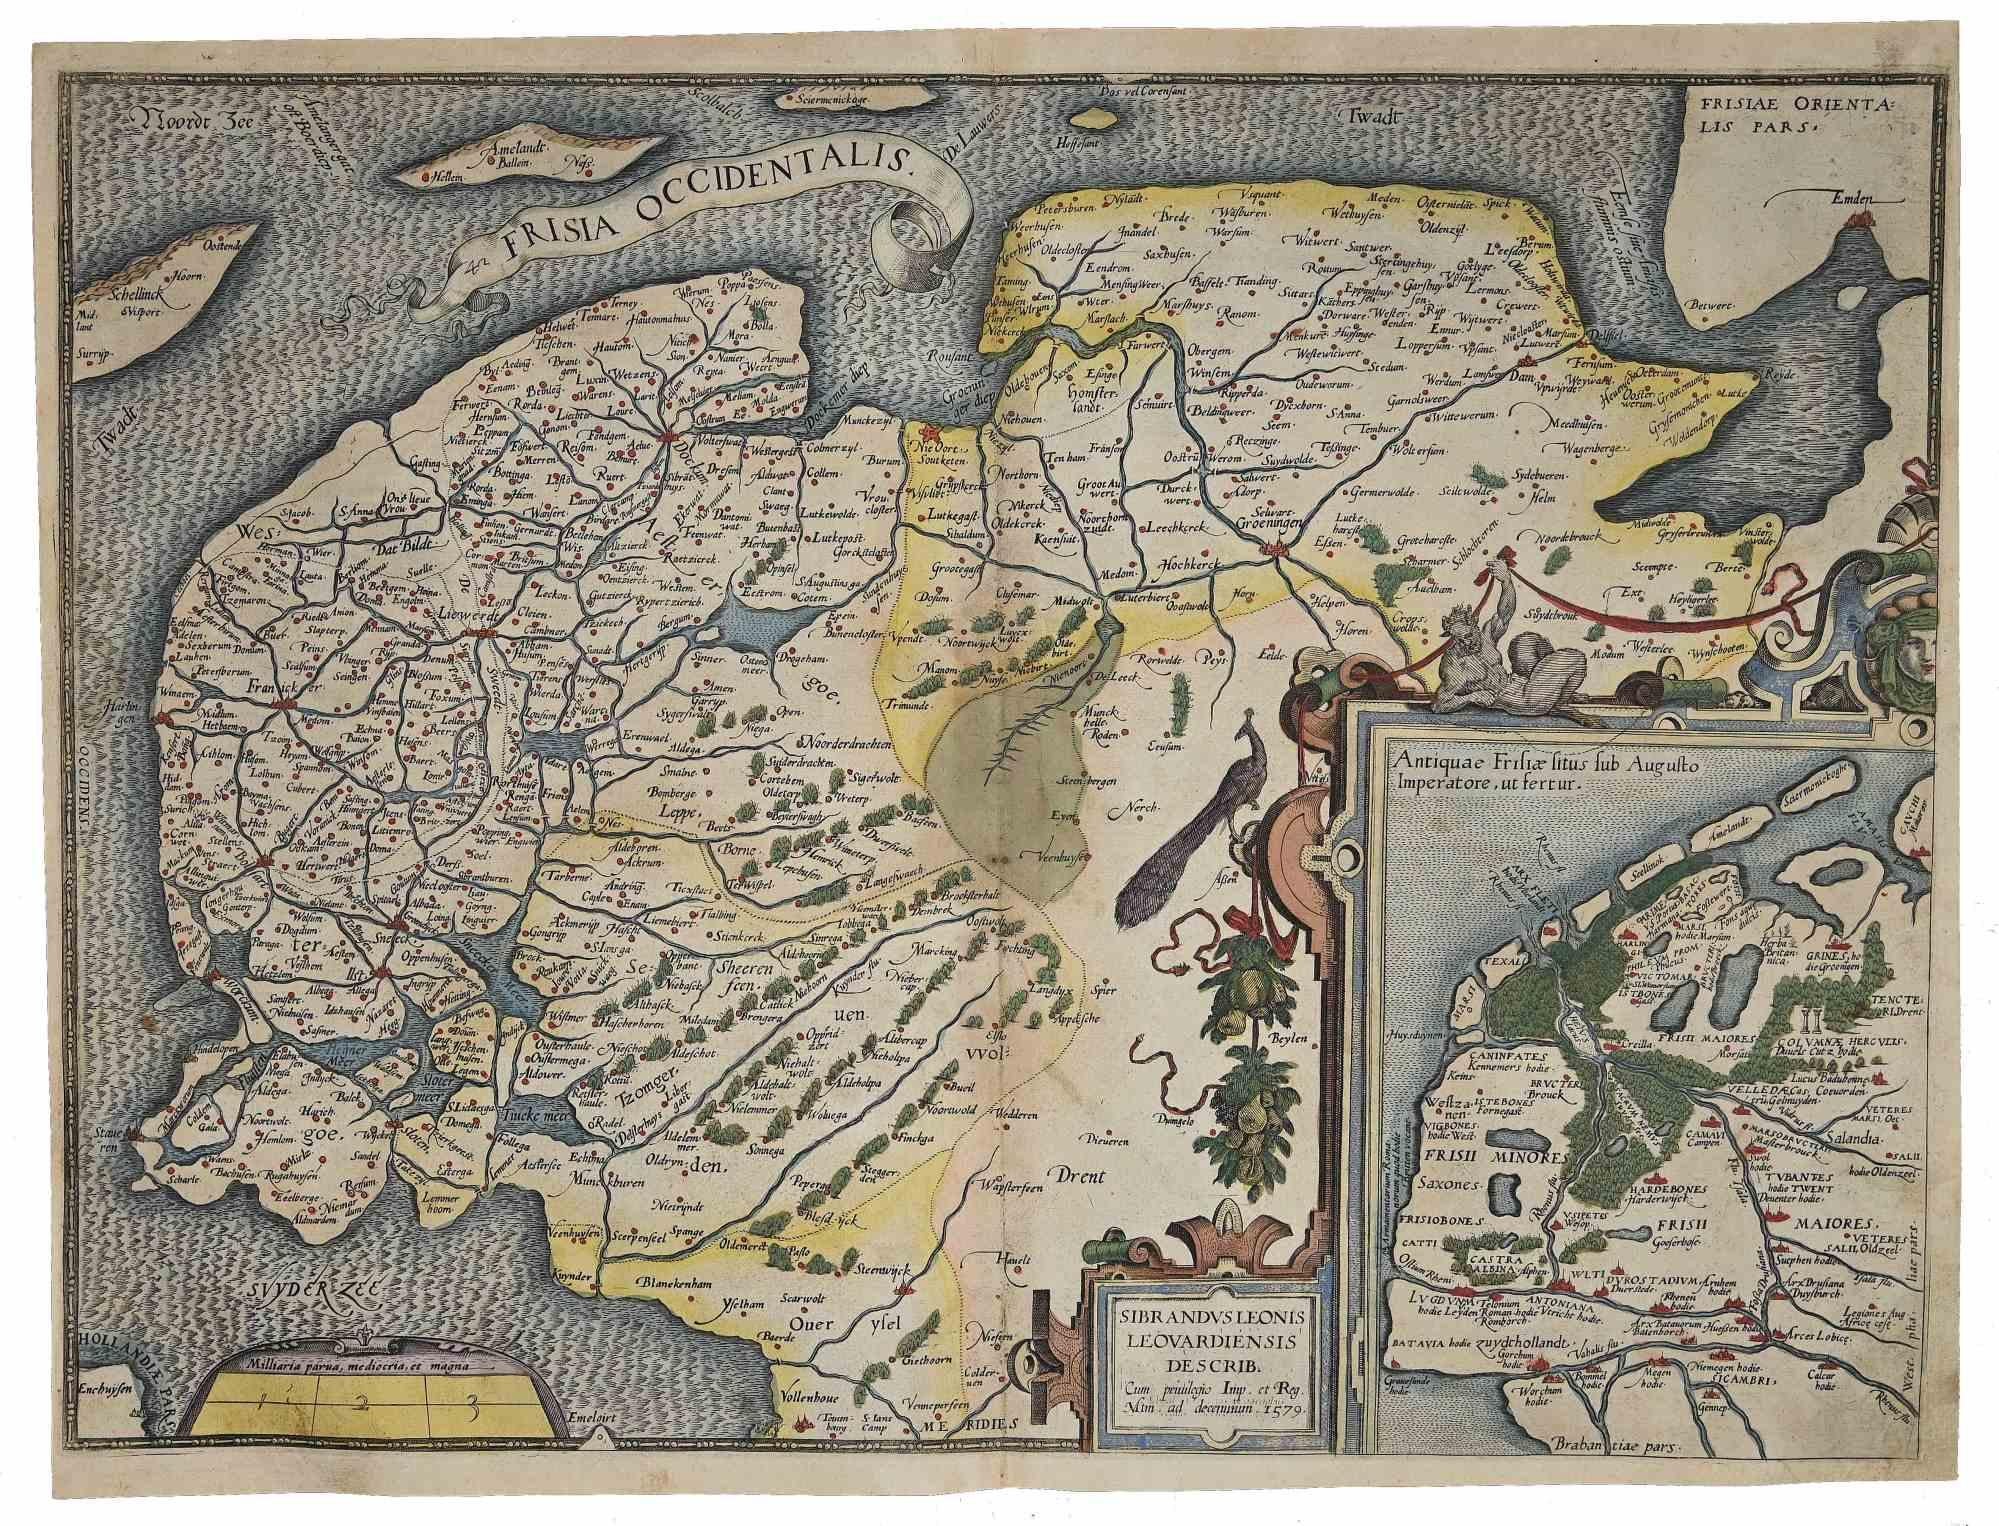 Frisiae Occidentalis Map - Original Etching by Abraham Ortelius - 1584